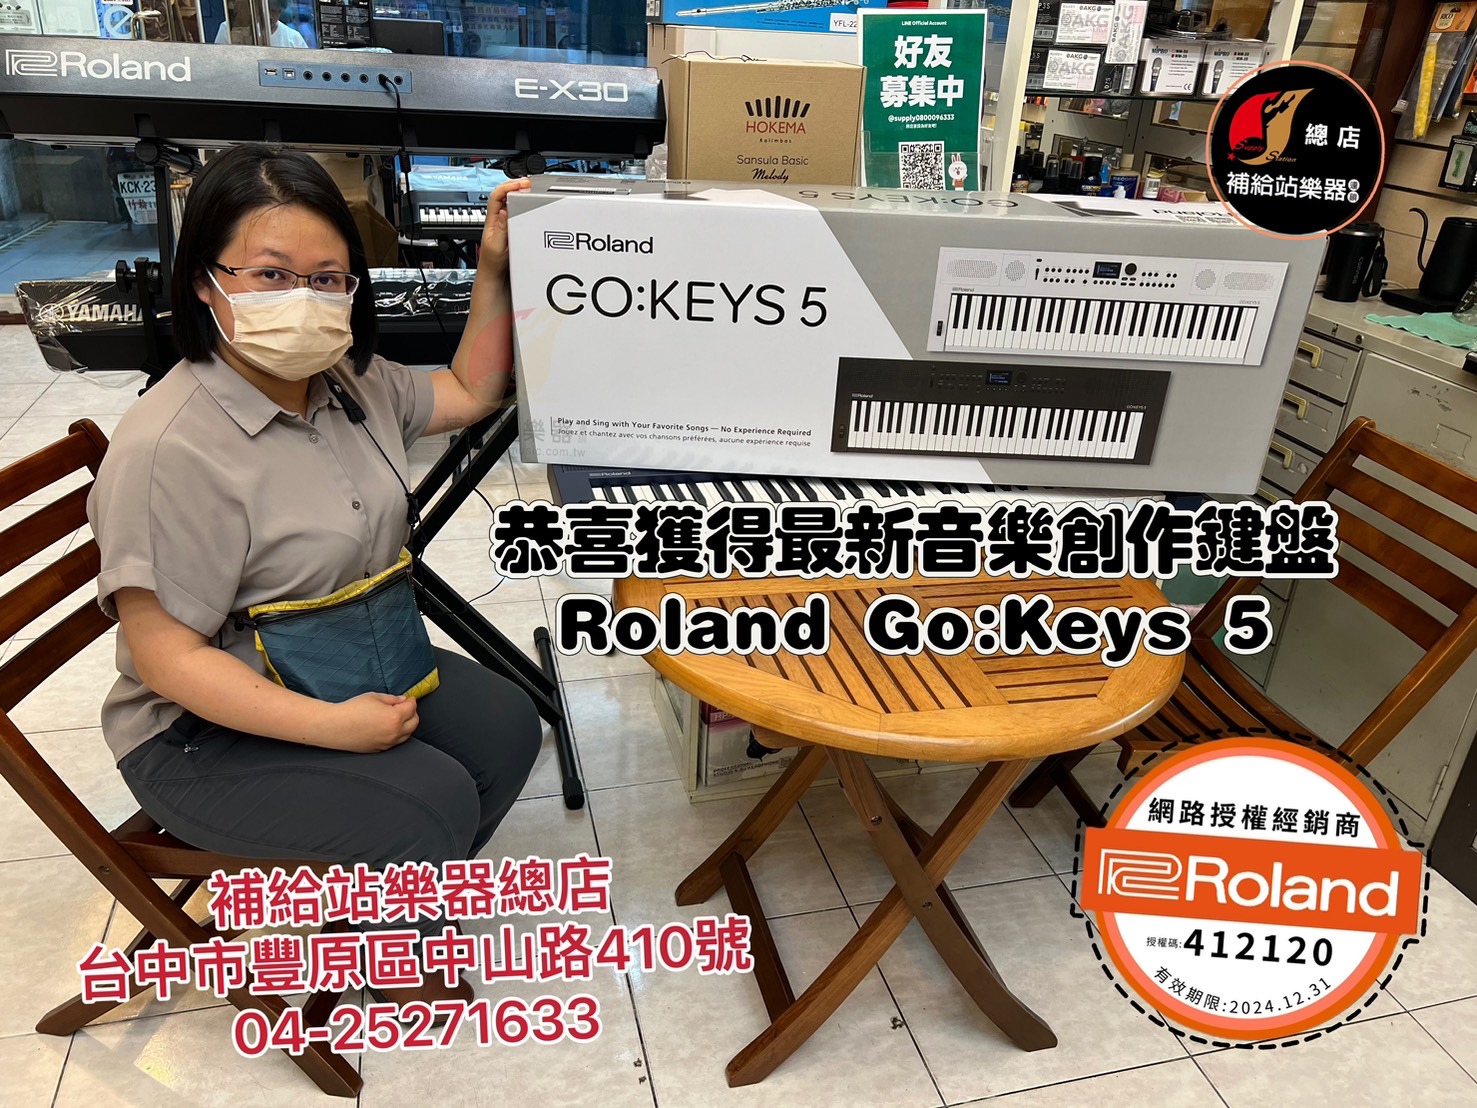 Roland-GoKeys5